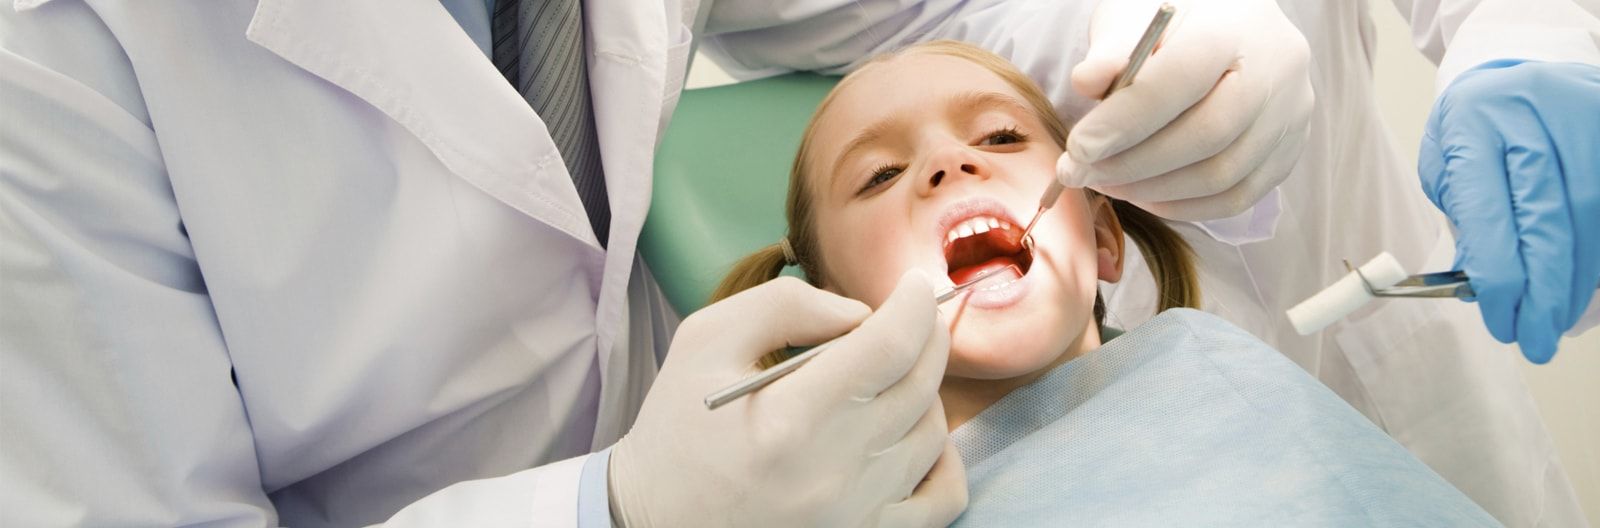 Clínica Dental La Vera portada 1